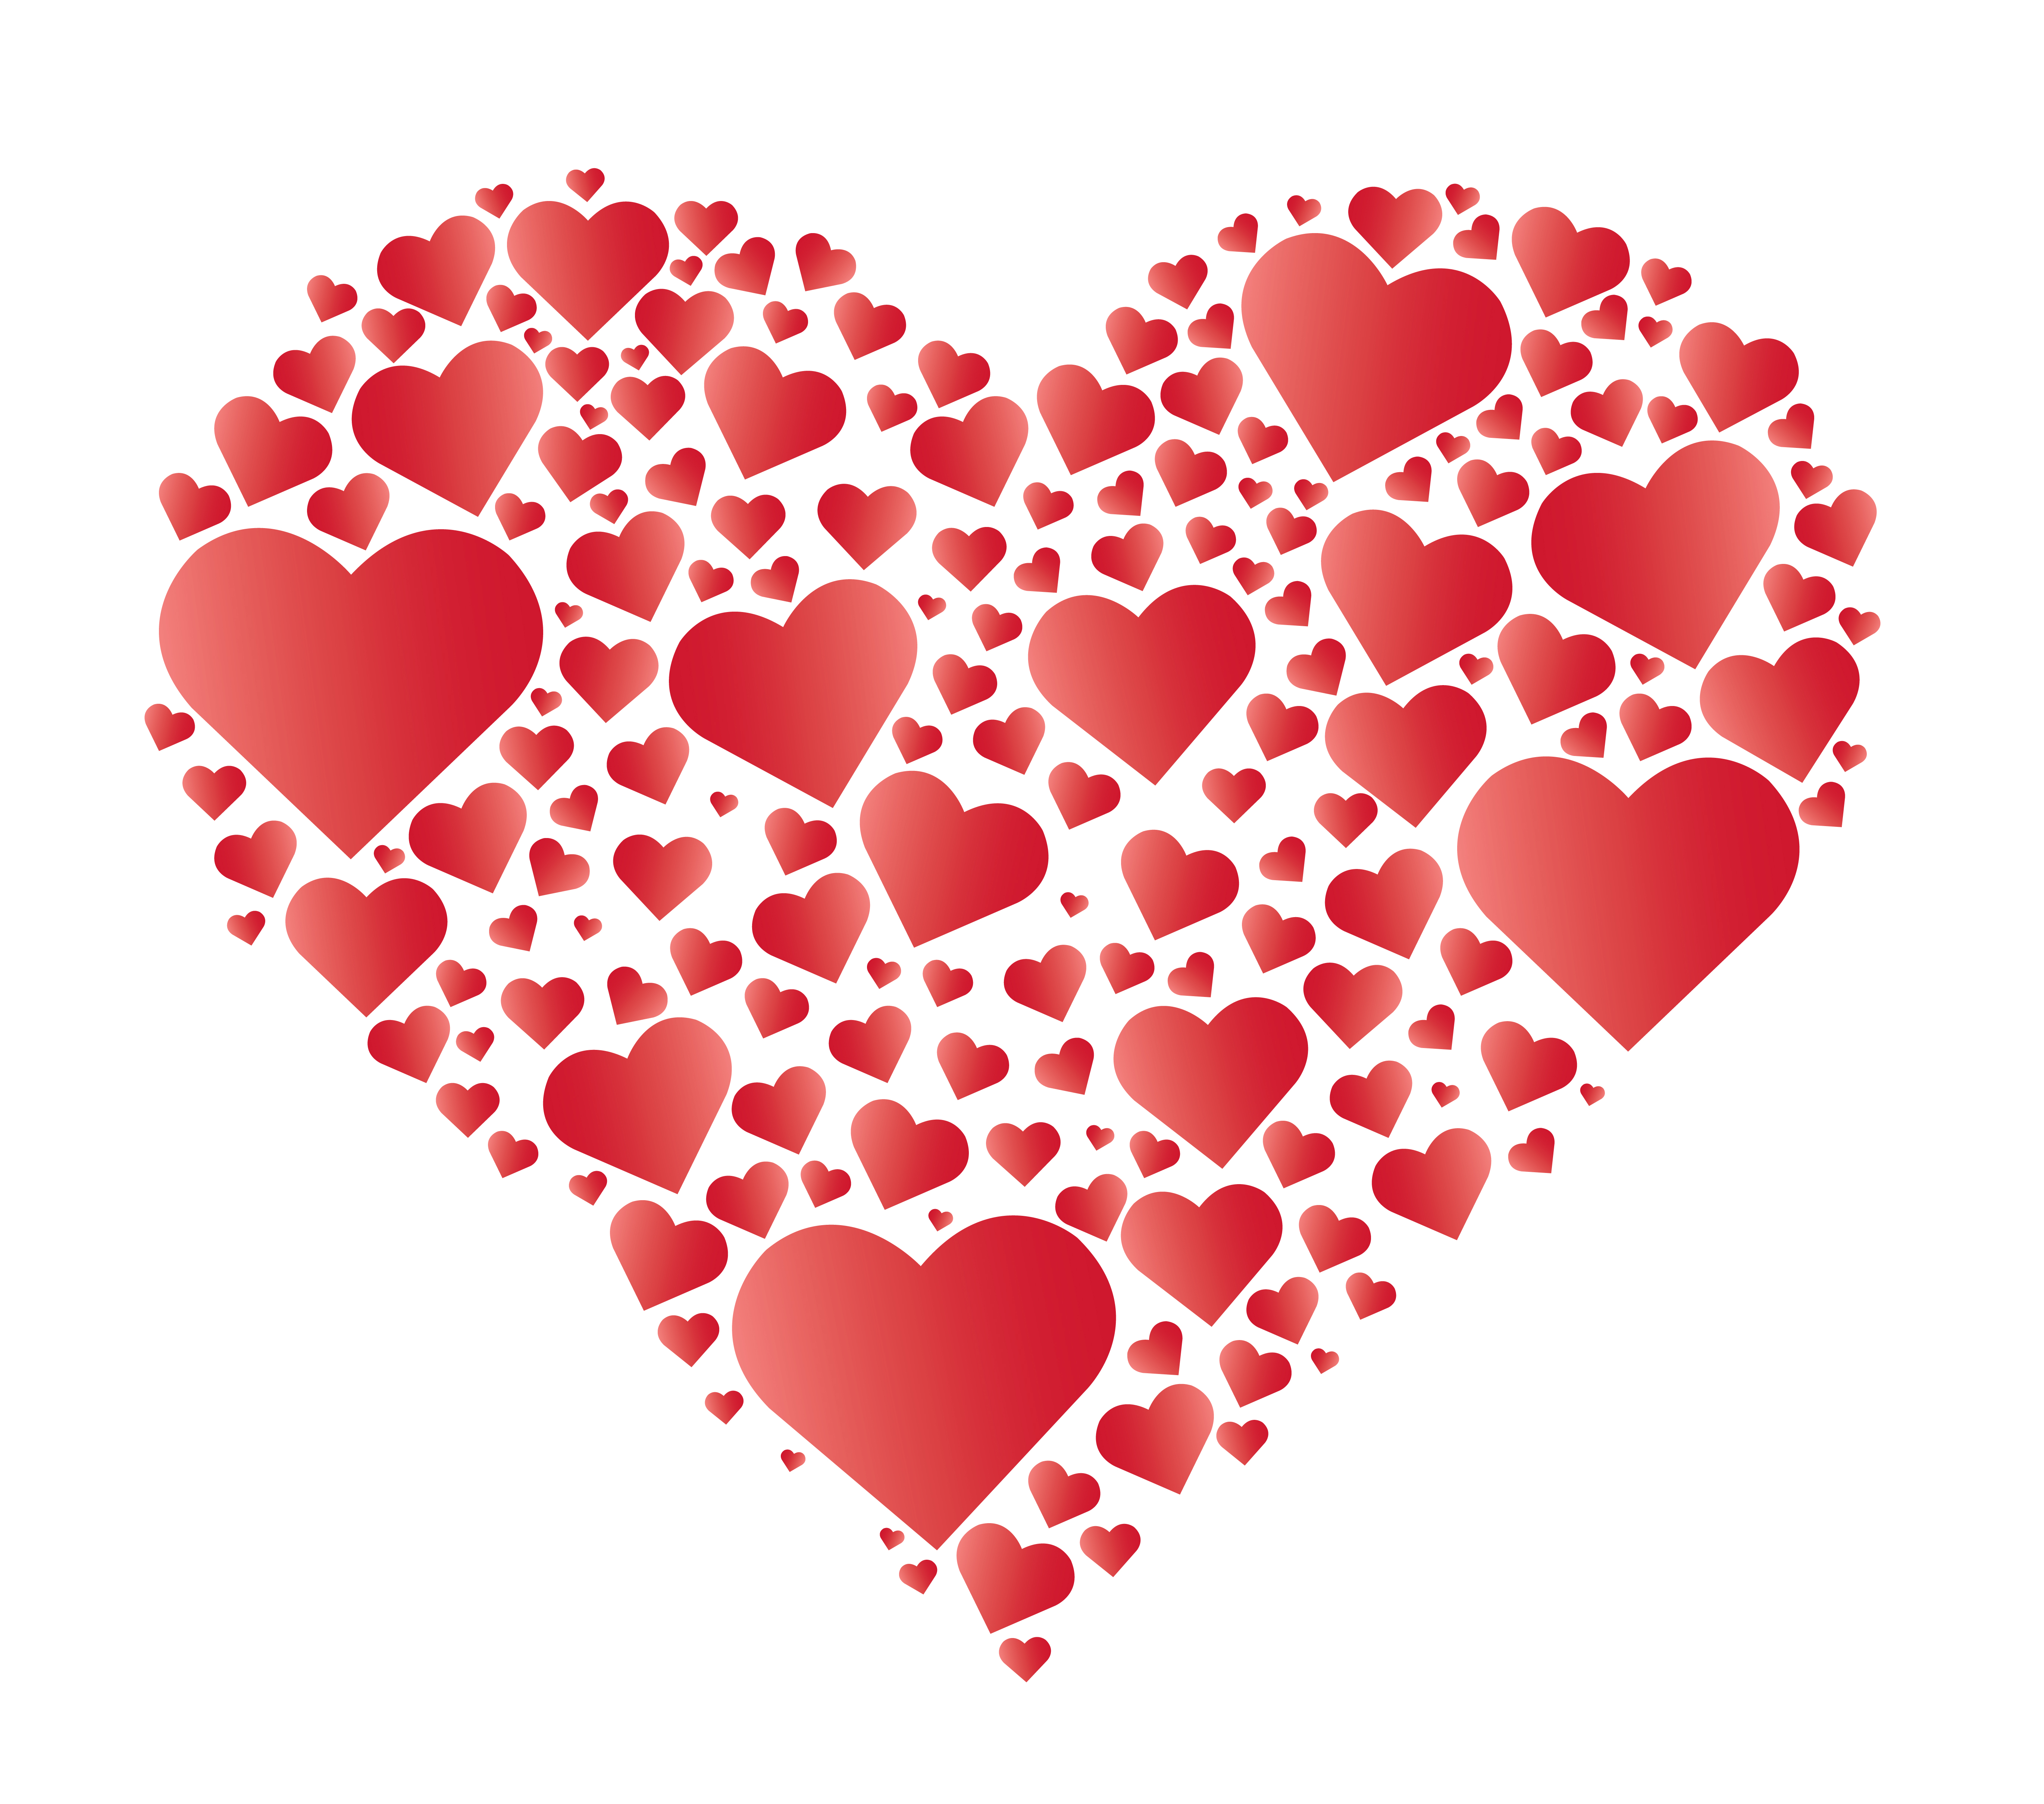 Hearts in Heart vector 533783 Download Free Vectors